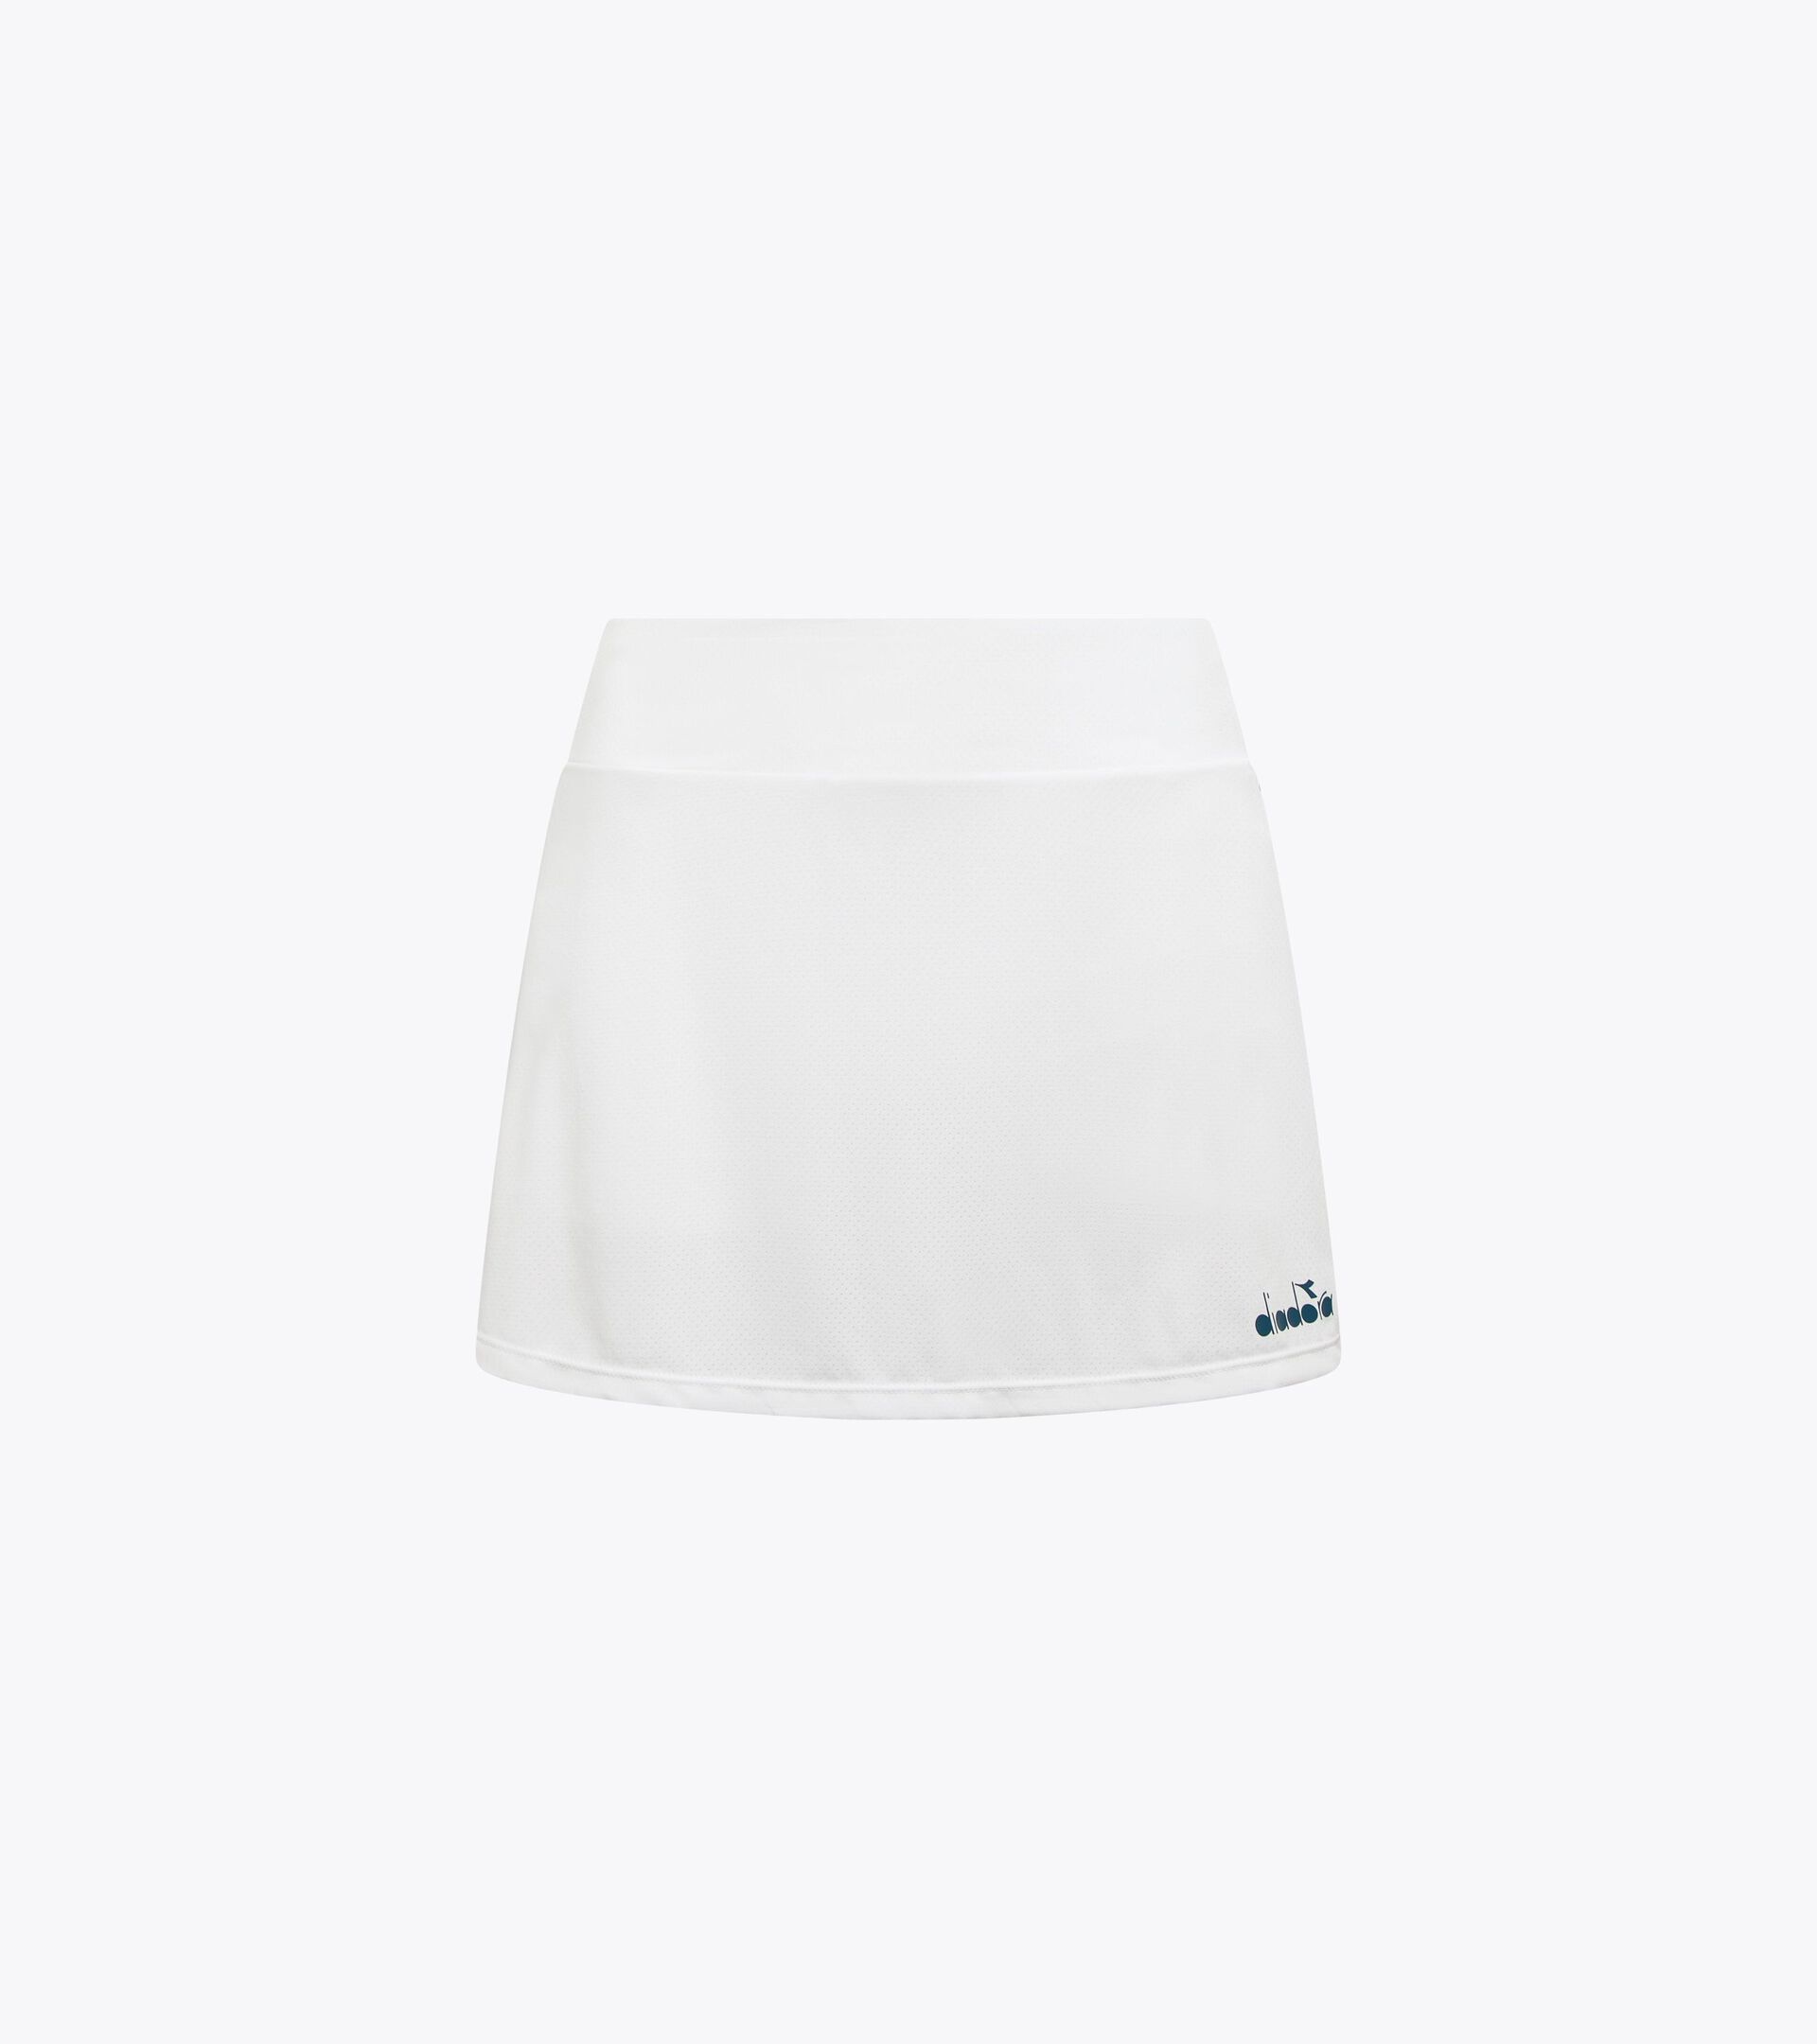 Tennis skirt - Women’s
 L. SKIRT CORE OPTICAL WHITE - Diadora